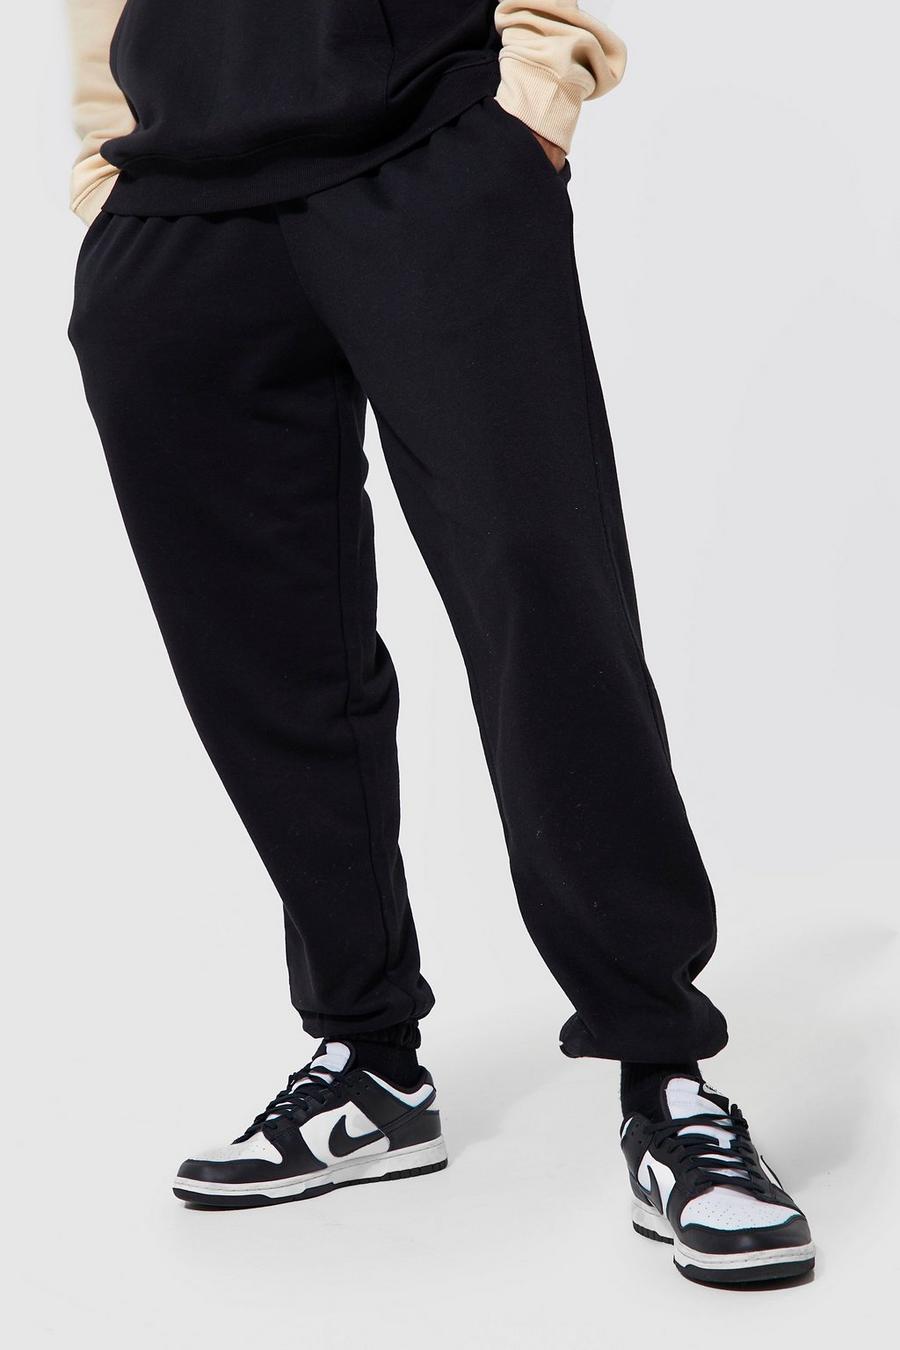 Pantalón deportivo Tall básico holgado con algodón ecológico, Black negro